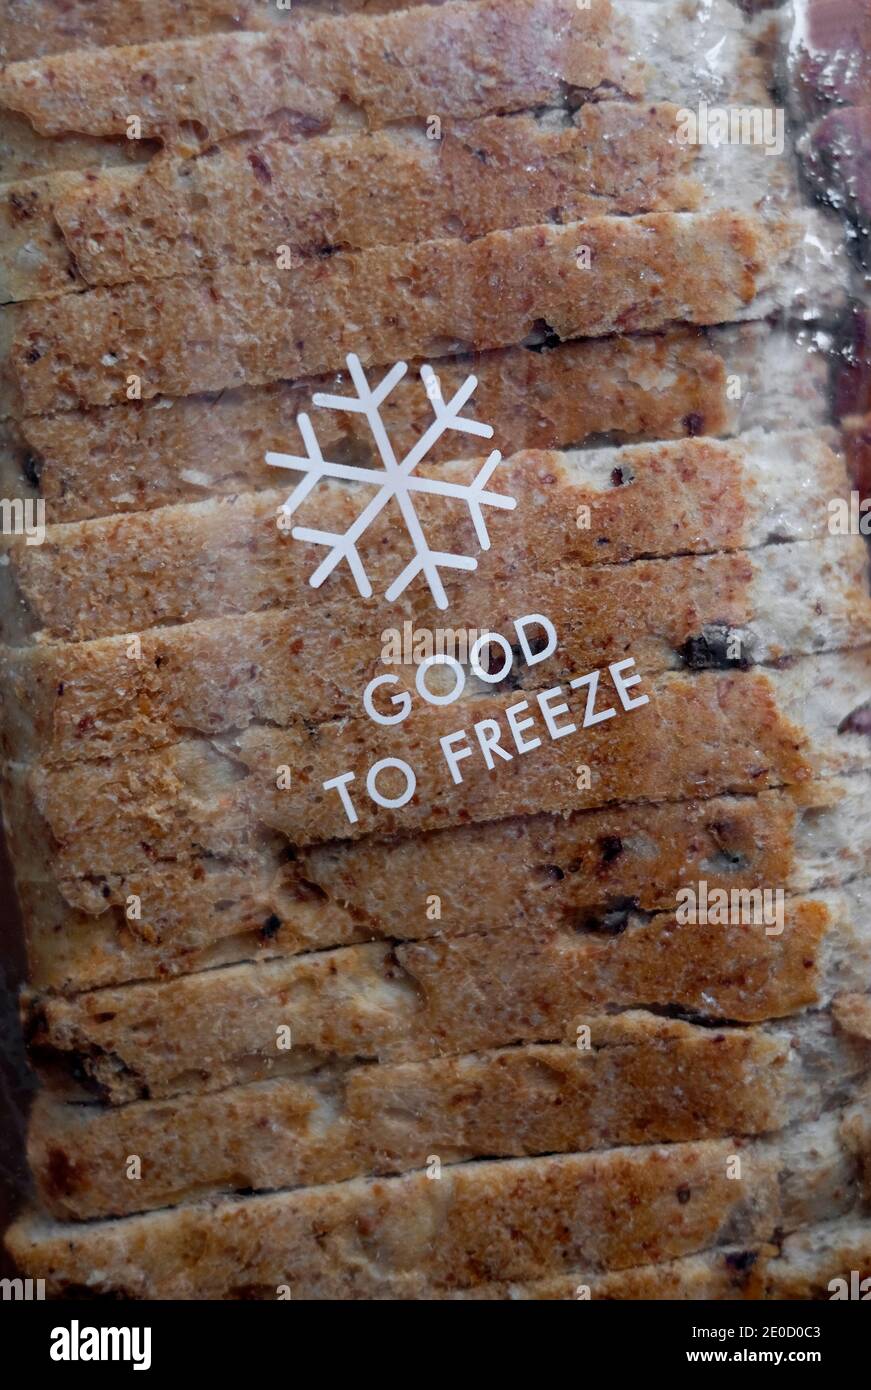 buon da congelare motivo su sacchetto di pane di granaio affettato Foto Stock